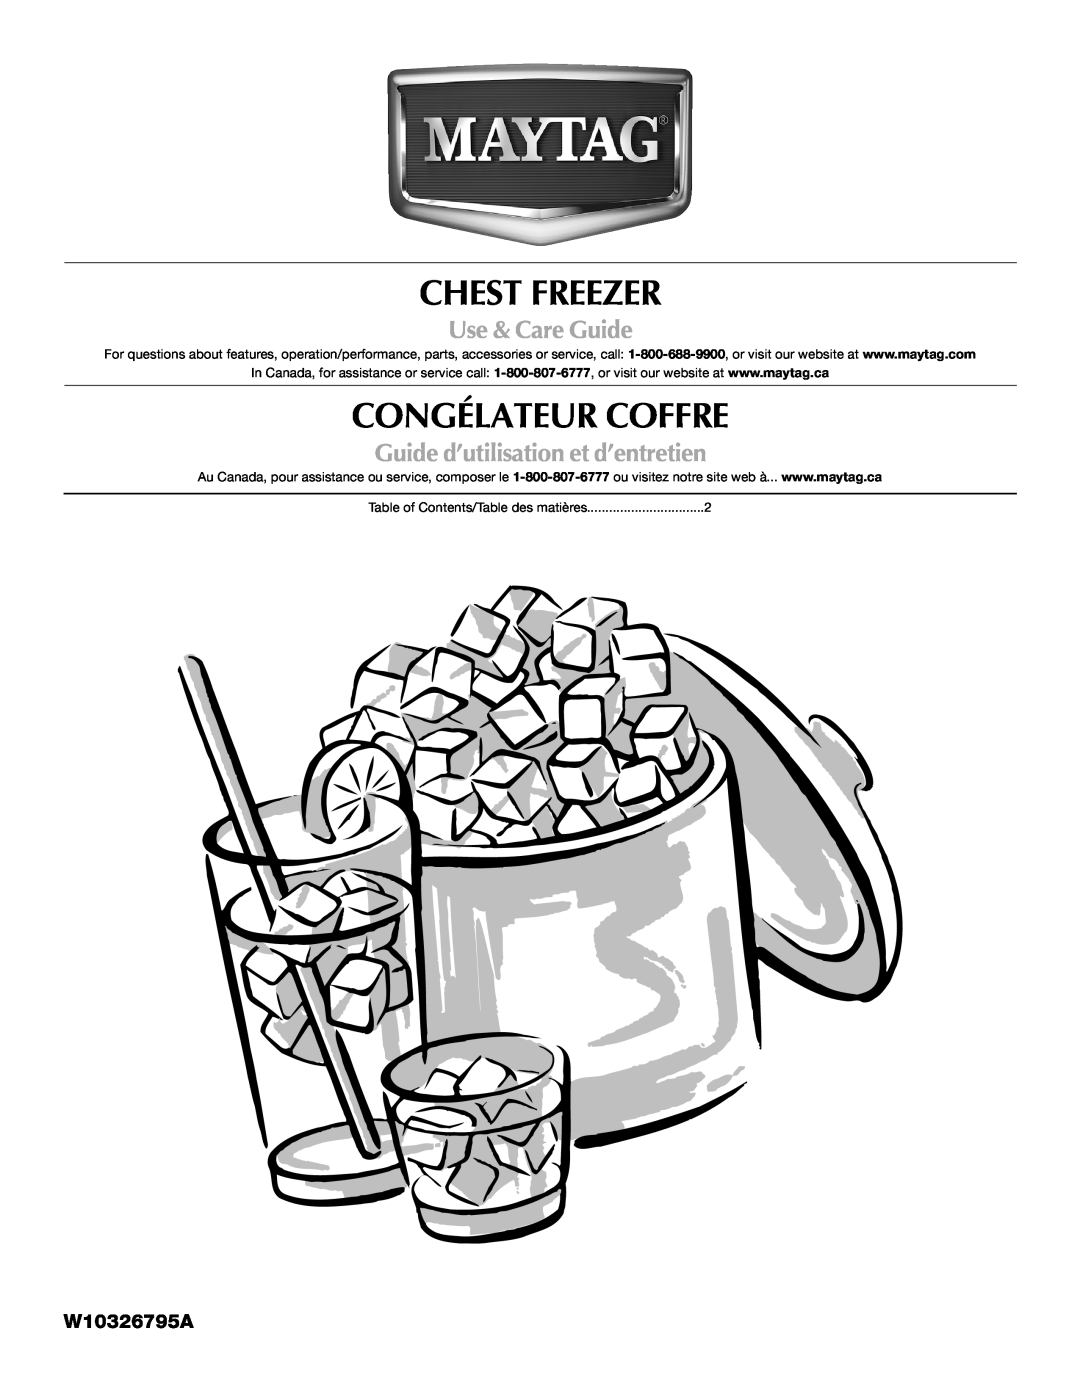 Maytag W10326795A manual Chest Freezer, Congélateur Coffre, Use & Care Guide, Guide d’utilisation et d’entretien 